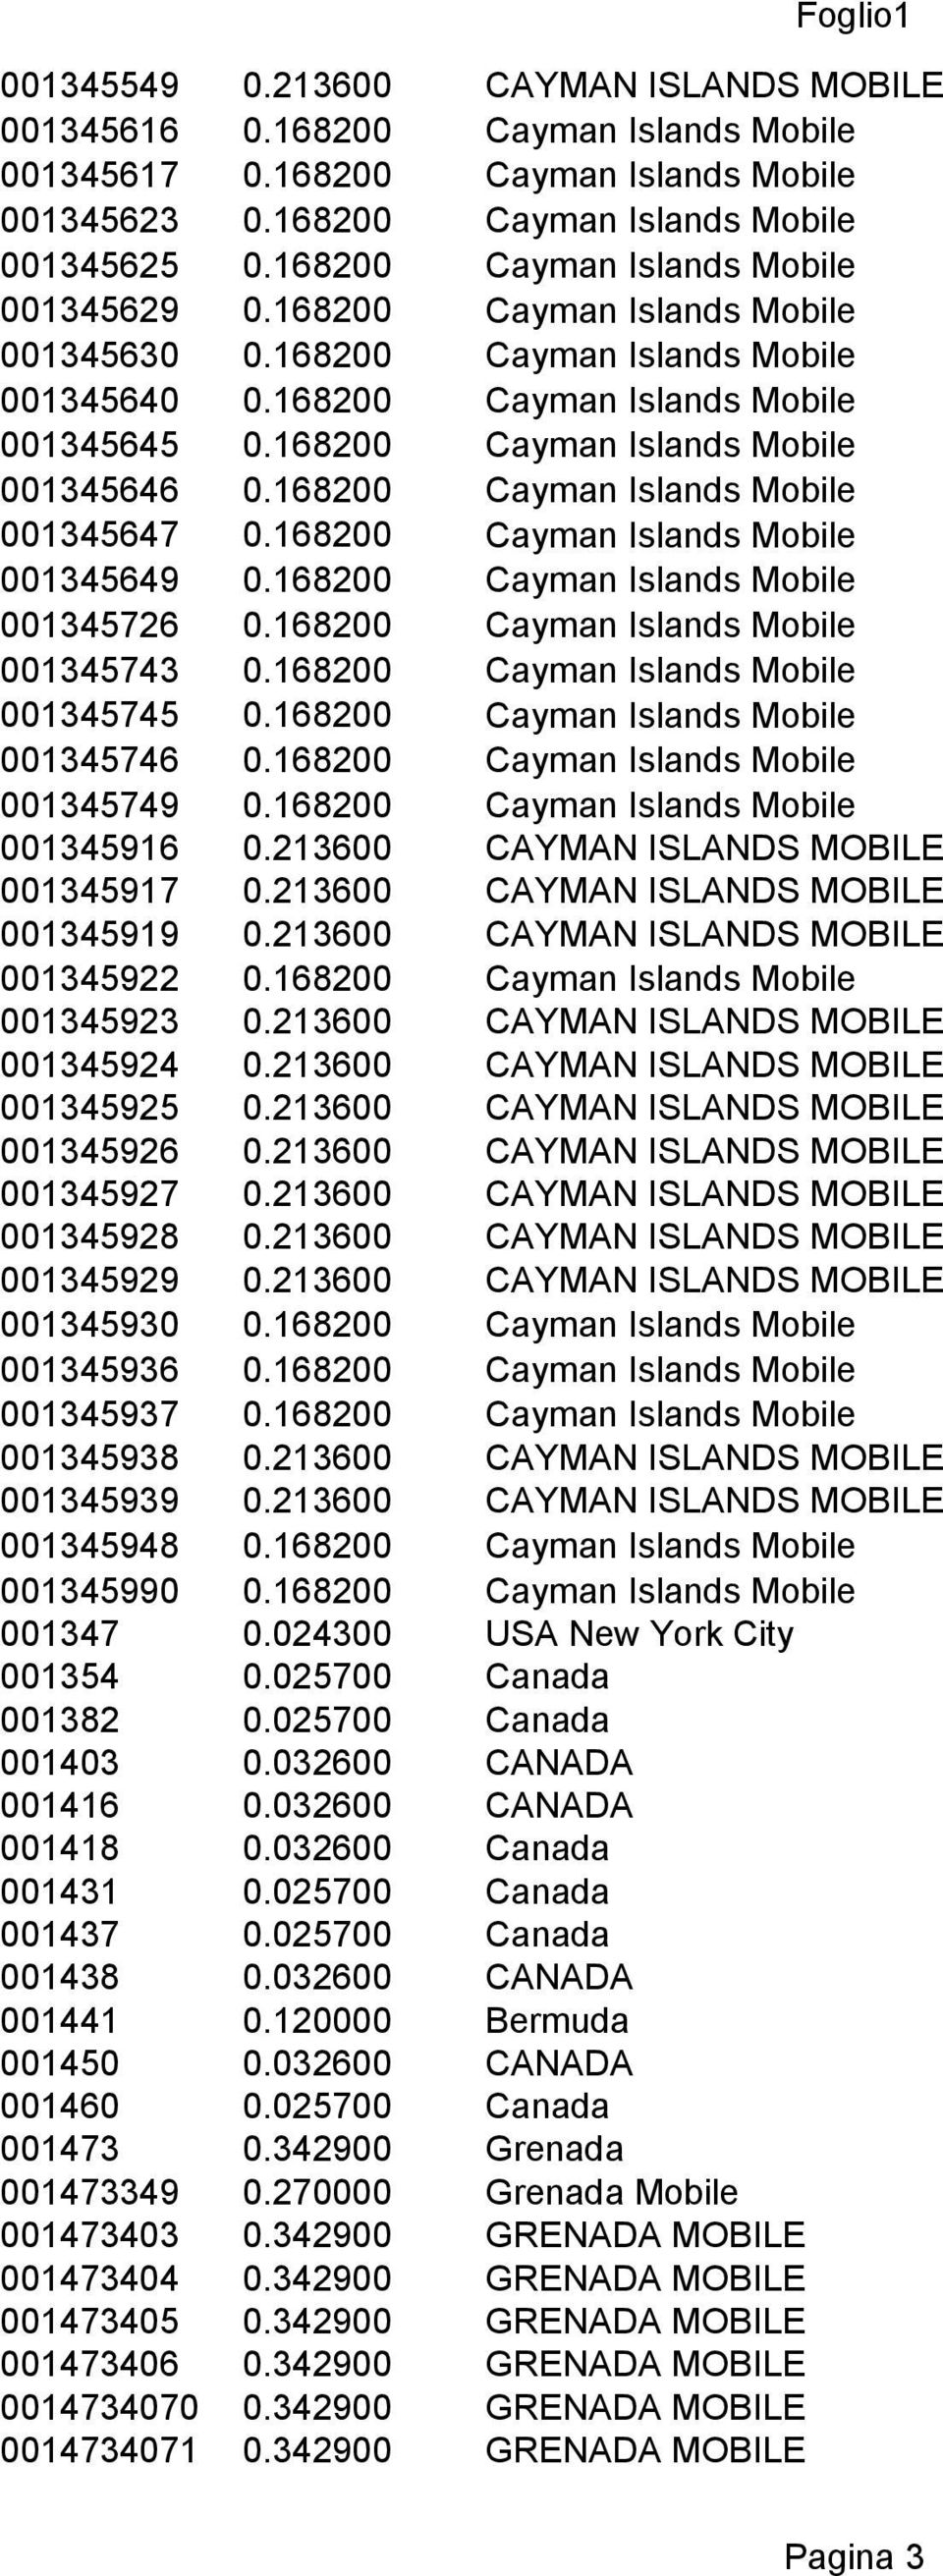 168200 Cayman Islands Mobile 001345646 0.168200 Cayman Islands Mobile 001345647 0.168200 Cayman Islands Mobile 001345649 0.168200 Cayman Islands Mobile 001345726 0.